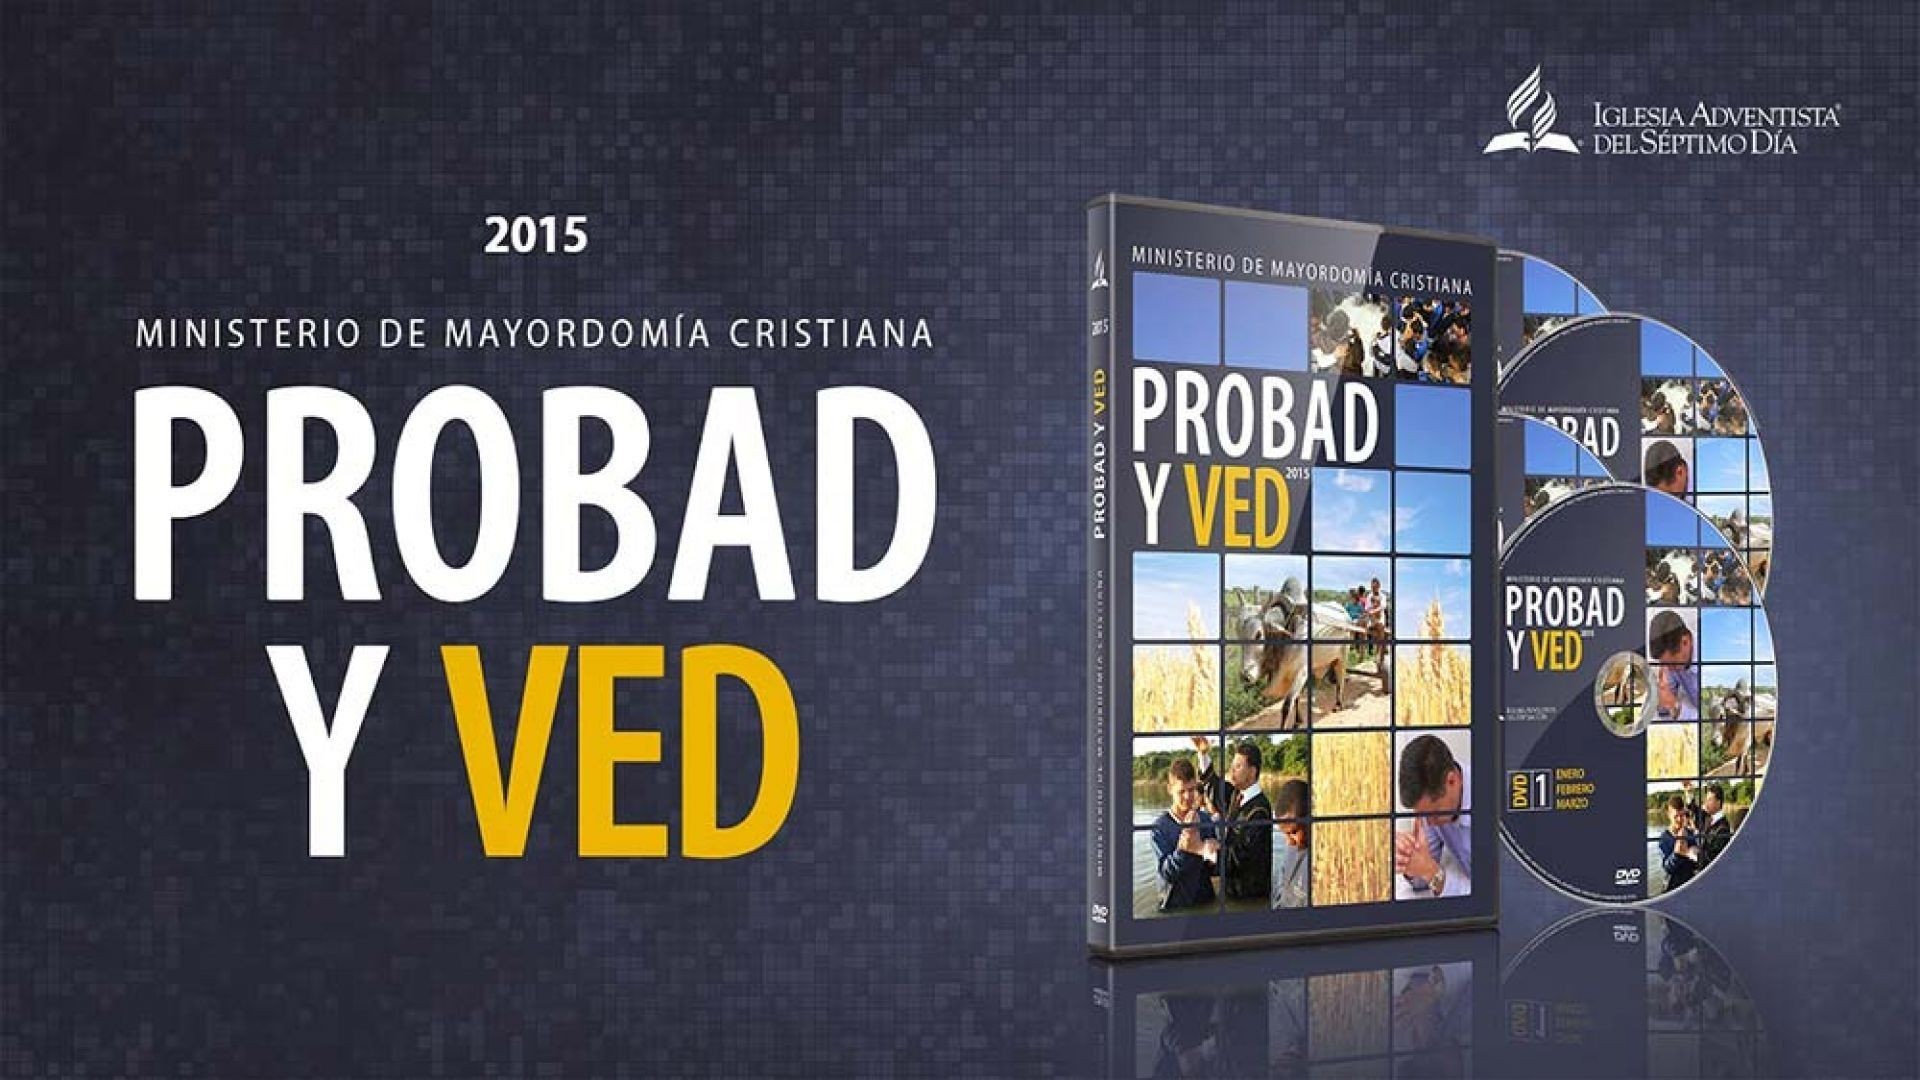 30/May. La puerta que nadie puede cerrar - Probad y Ved | Iglesia Adventista